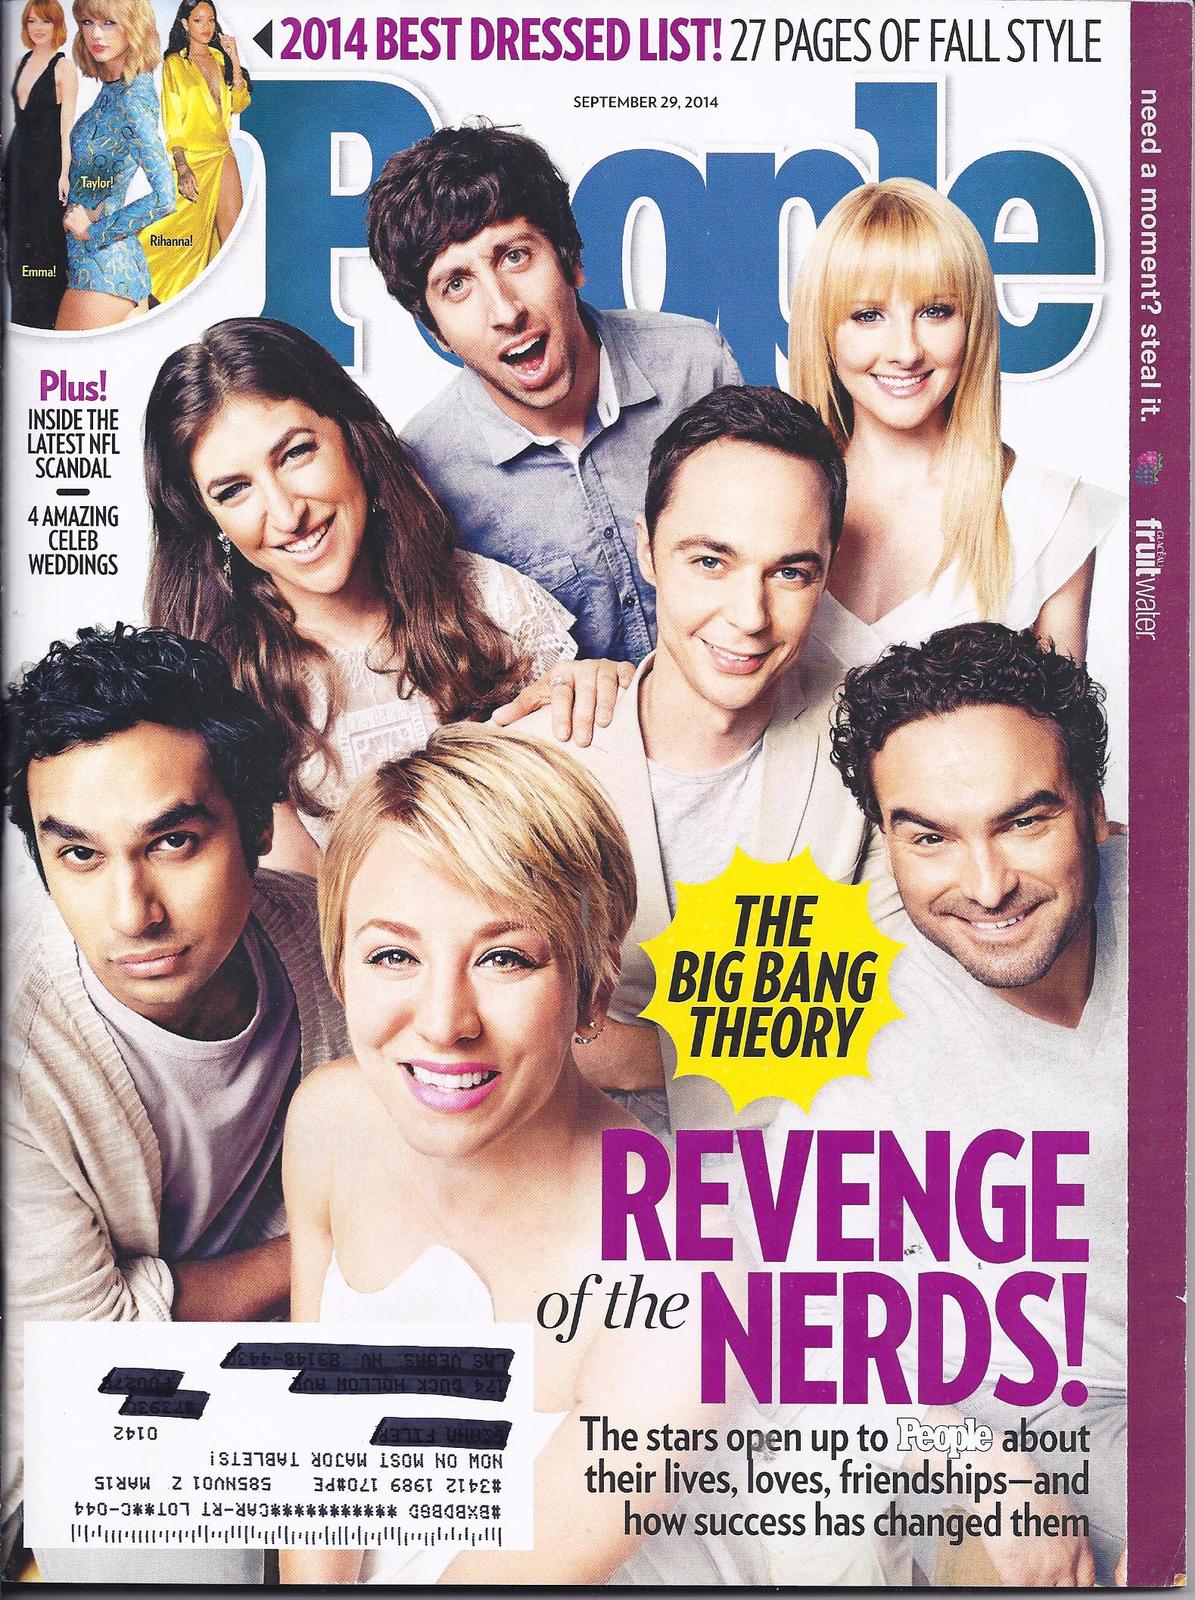 THE BIG BANG THEORY @ People Magazine Sept  29, 2014 - $2.95